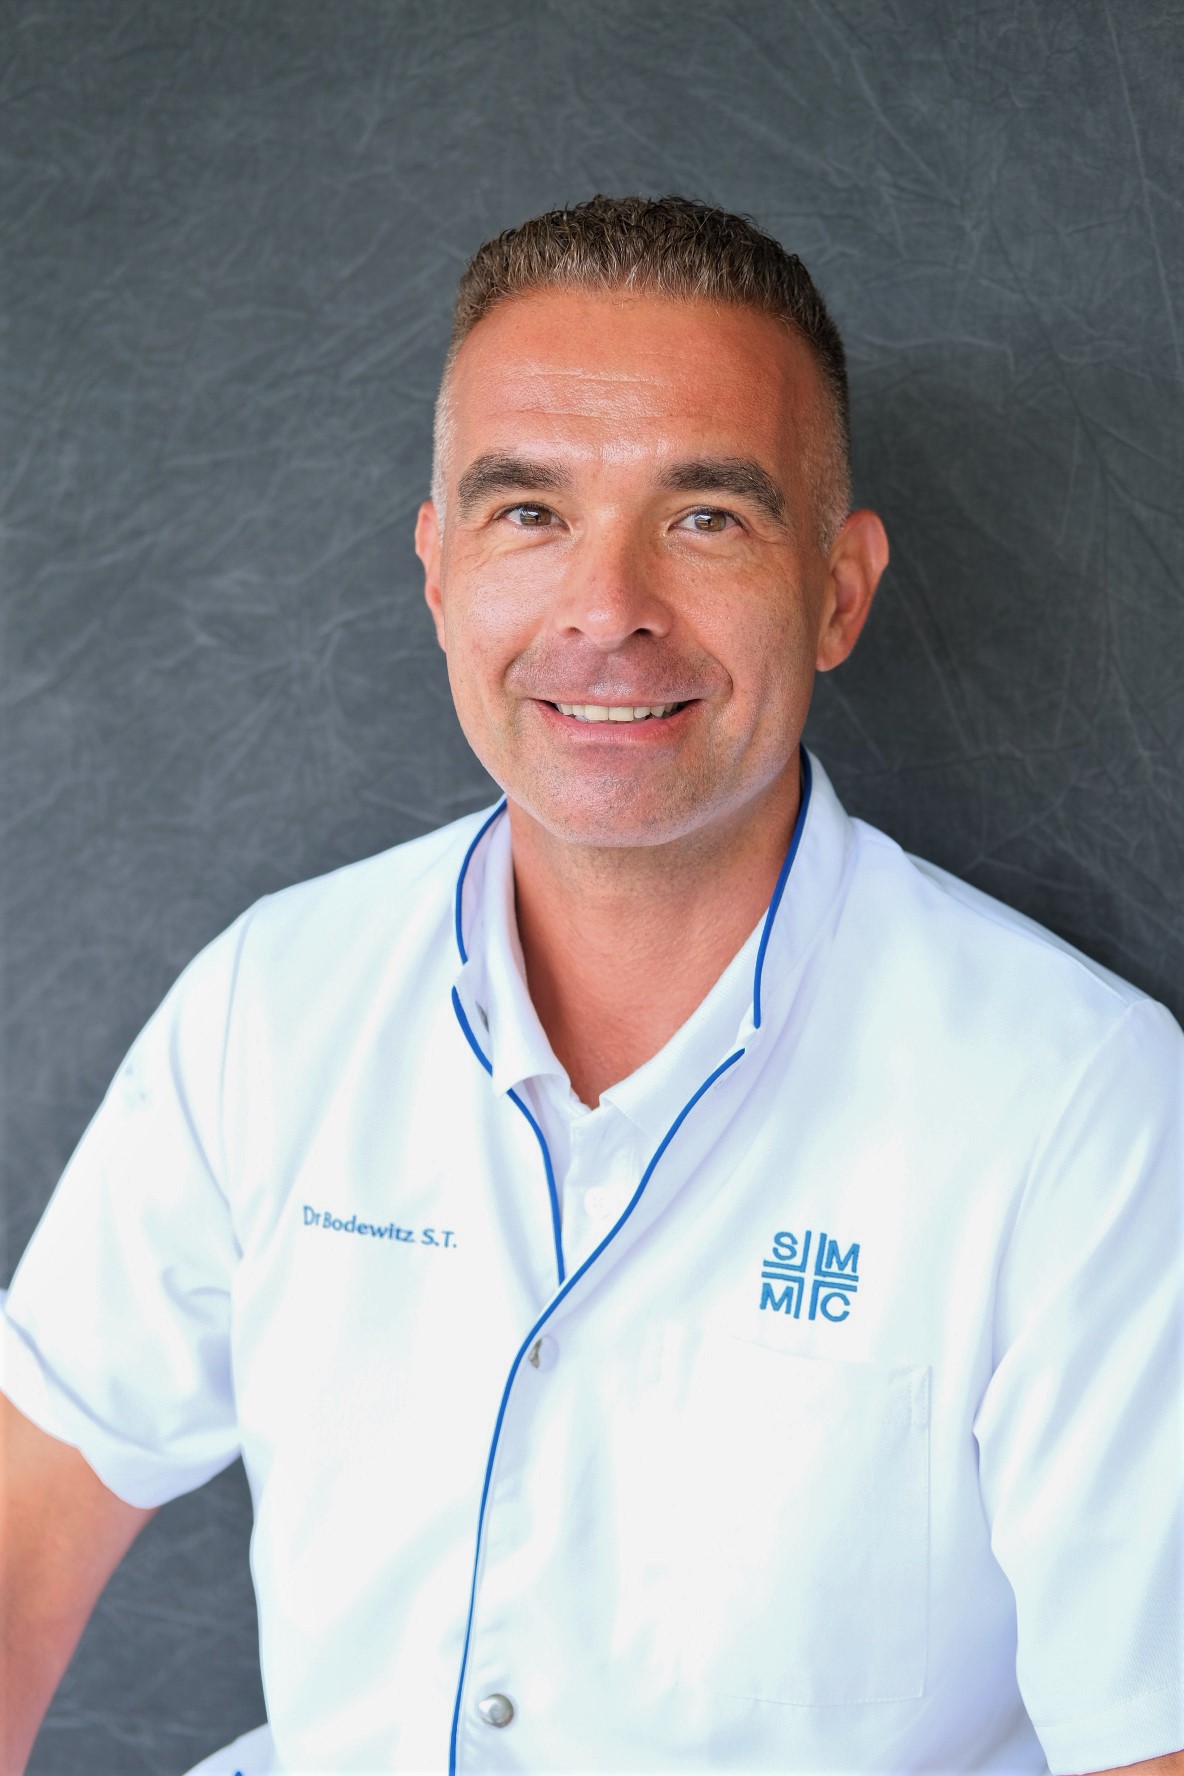 Dr. Sander Bodewitz - Radiologist